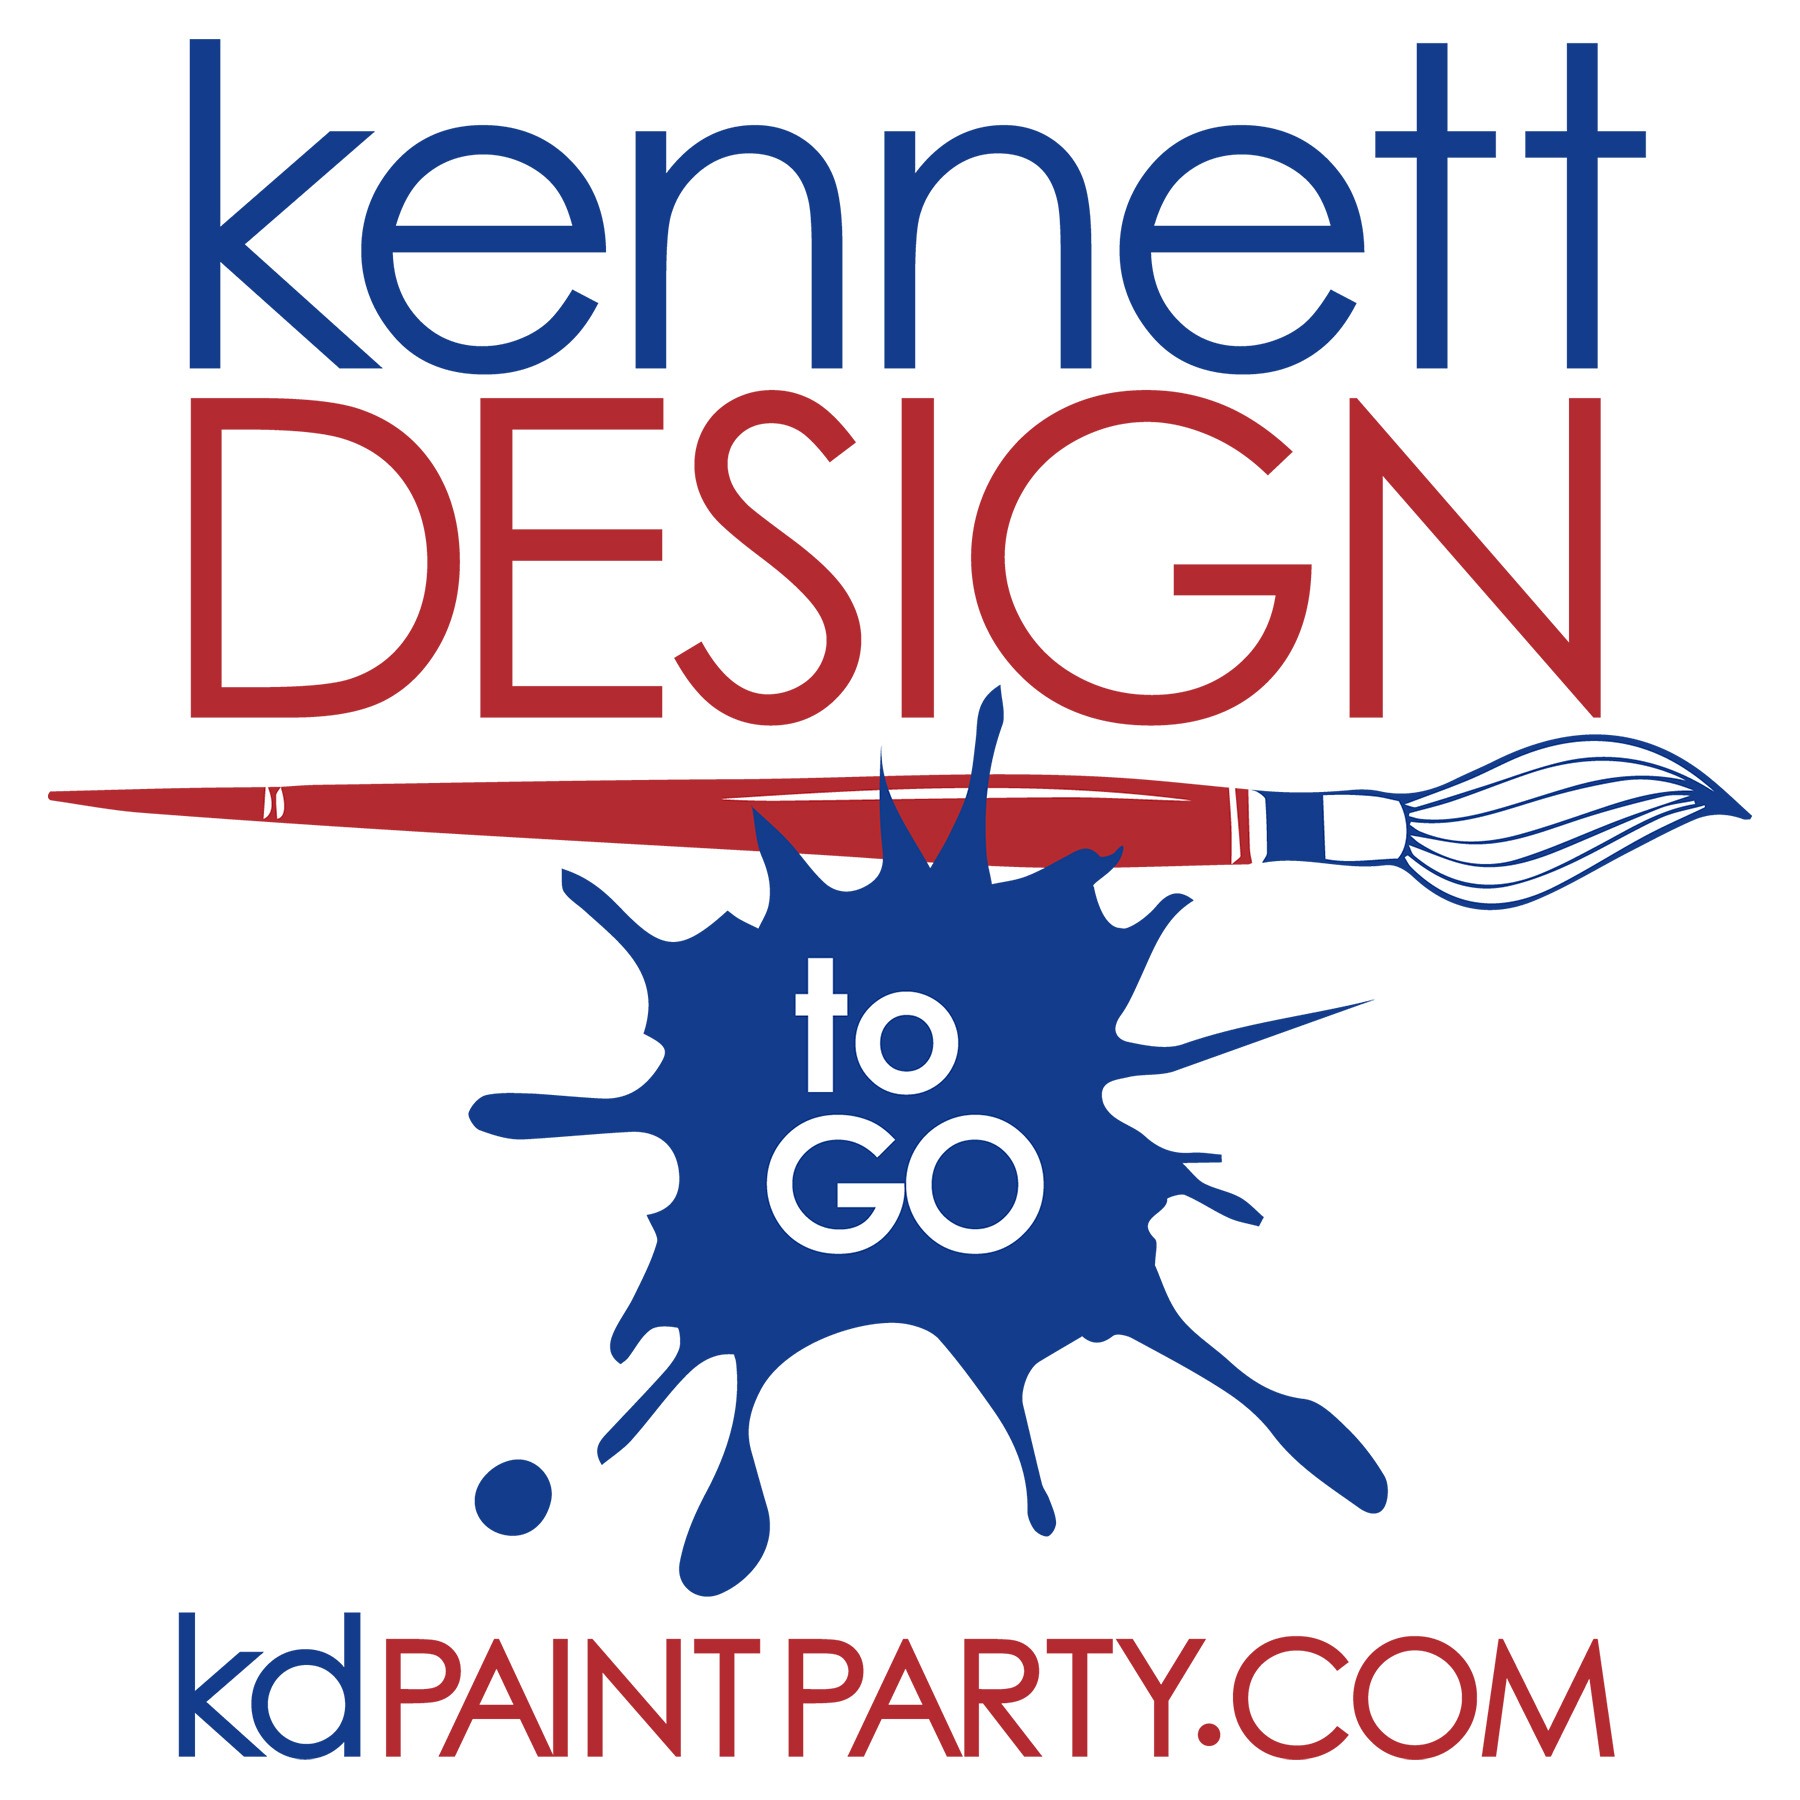 Kennett Design, LLC